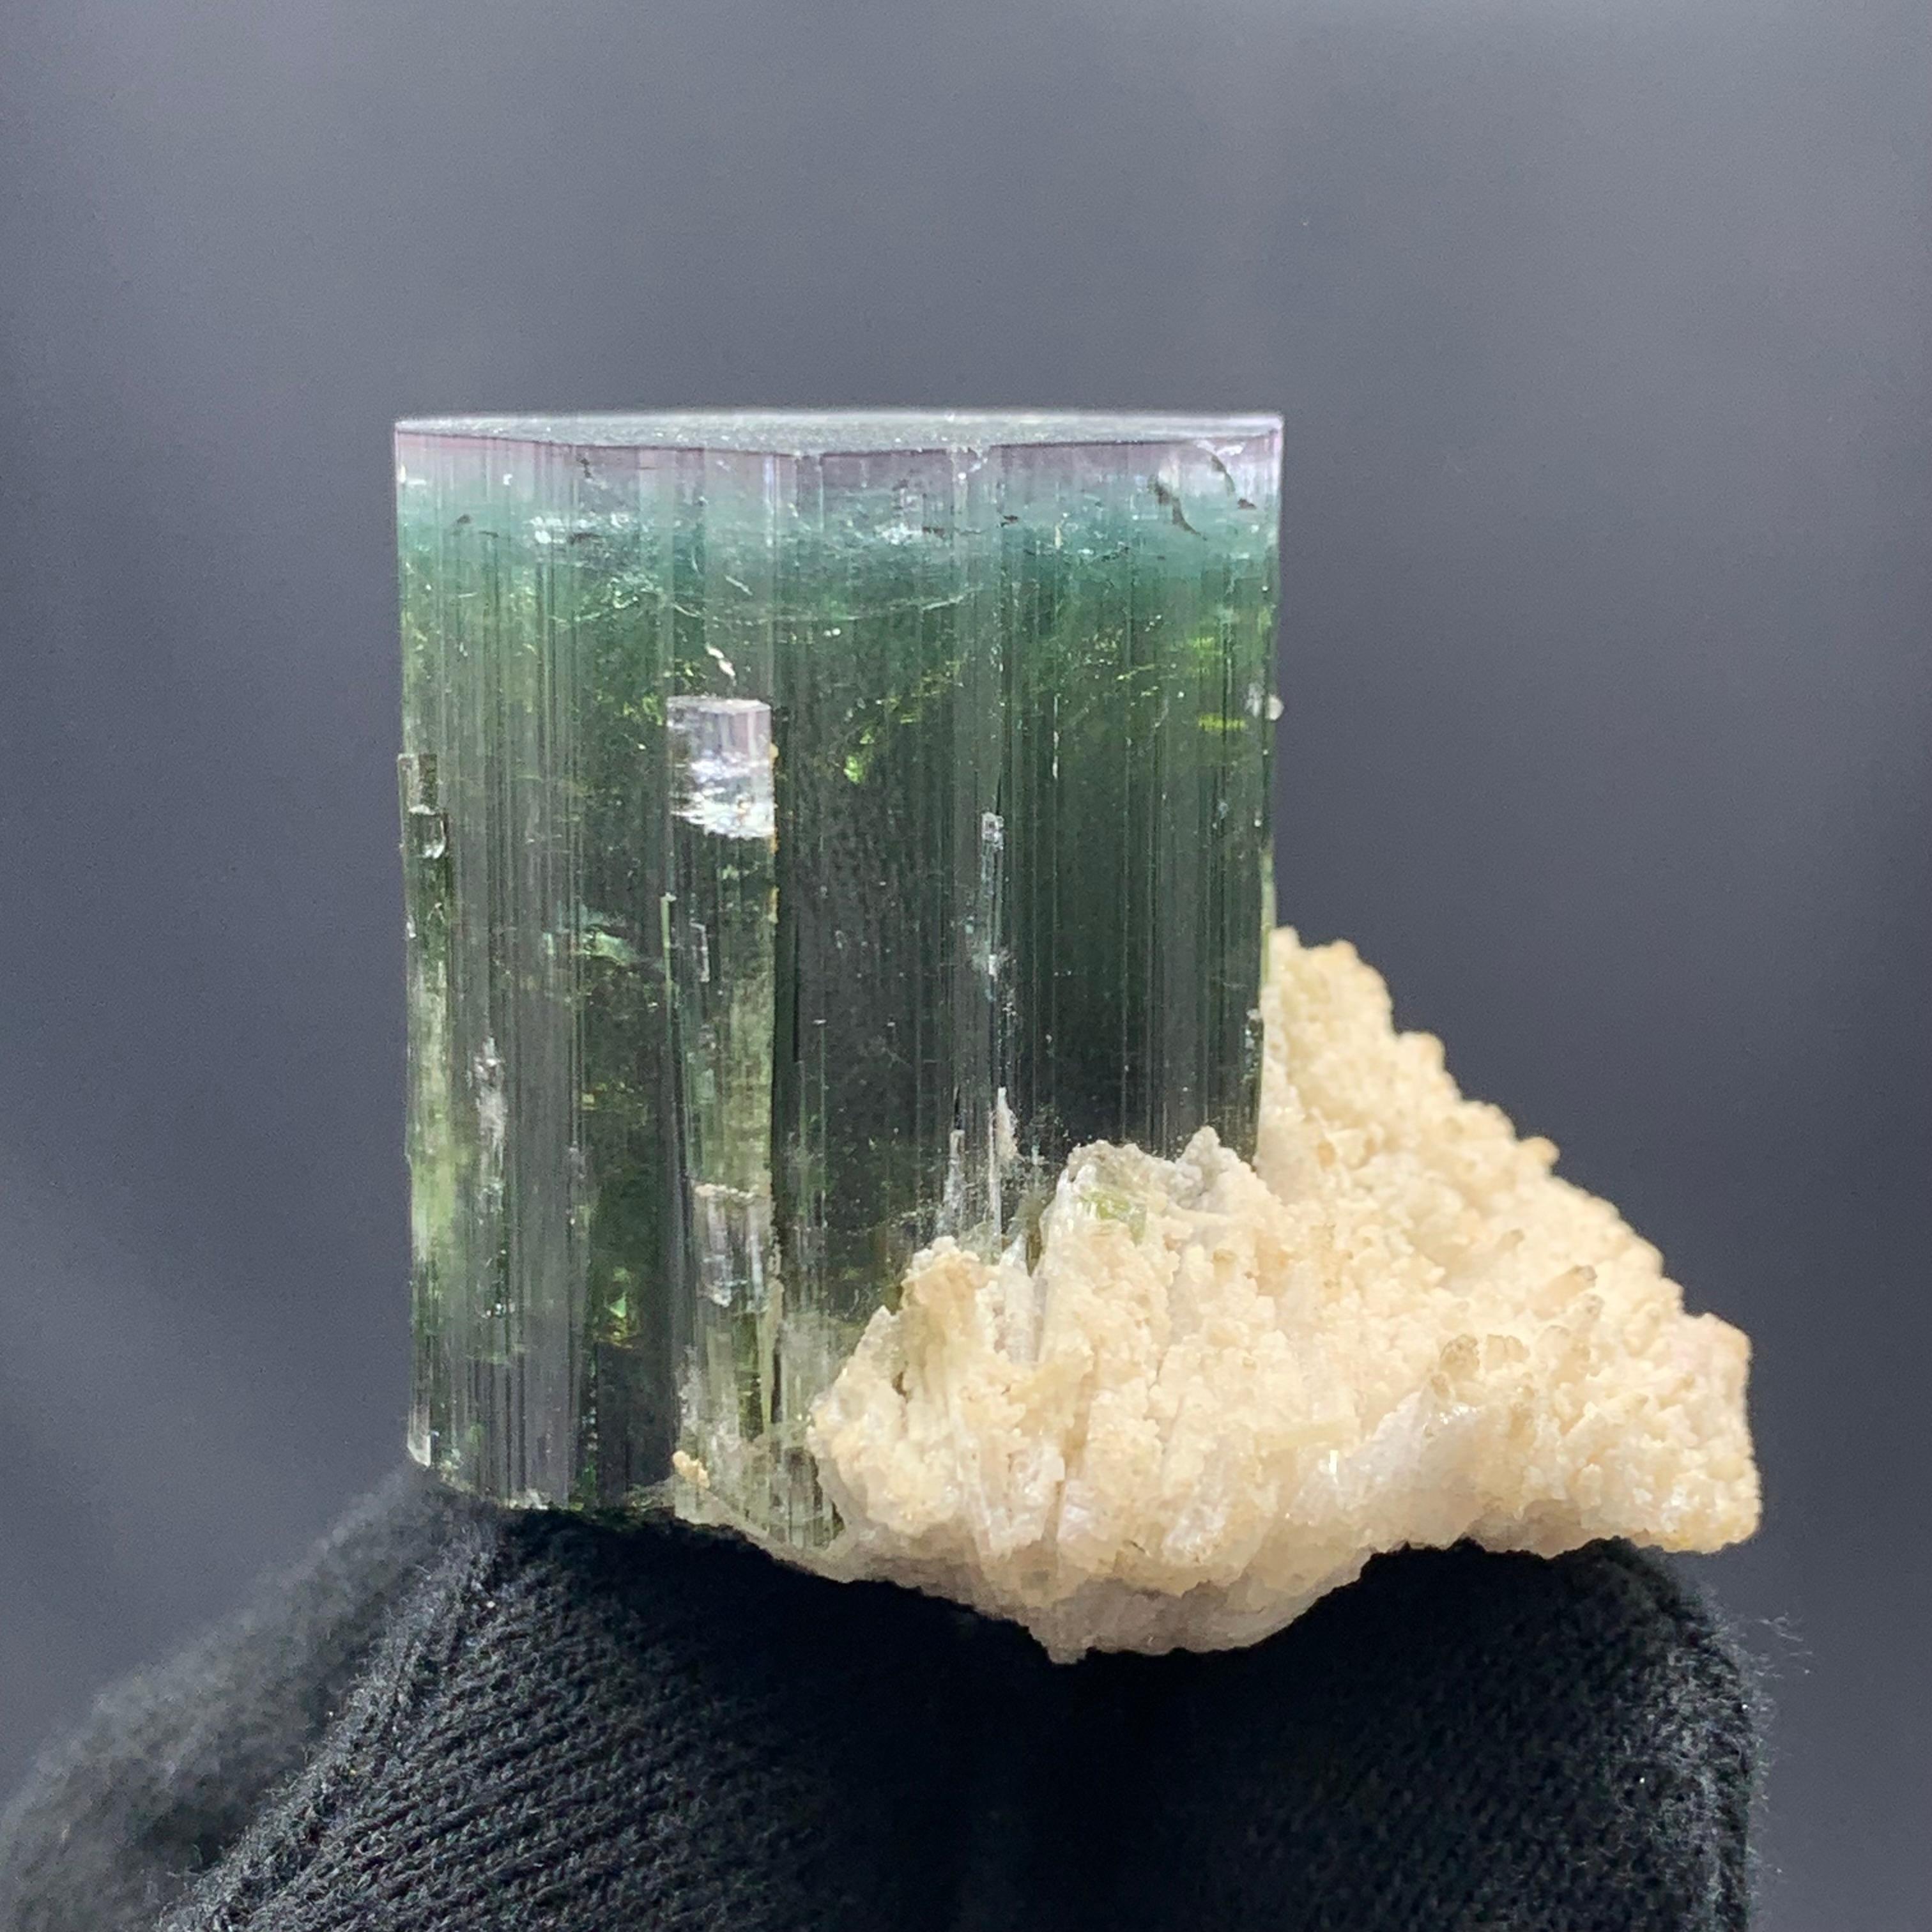 Spécimen de tourmaline verte de Kunar, Afghanistan, 86,97 grammes 

Poids : 86,97 grammes 
Dimensions : 4,2 x 4,6 x 3,6 cm
Origine : Kunar, Afghanistan 

La tourmaline est un groupe minéral de silicate cristallin dans lequel le bore est composé